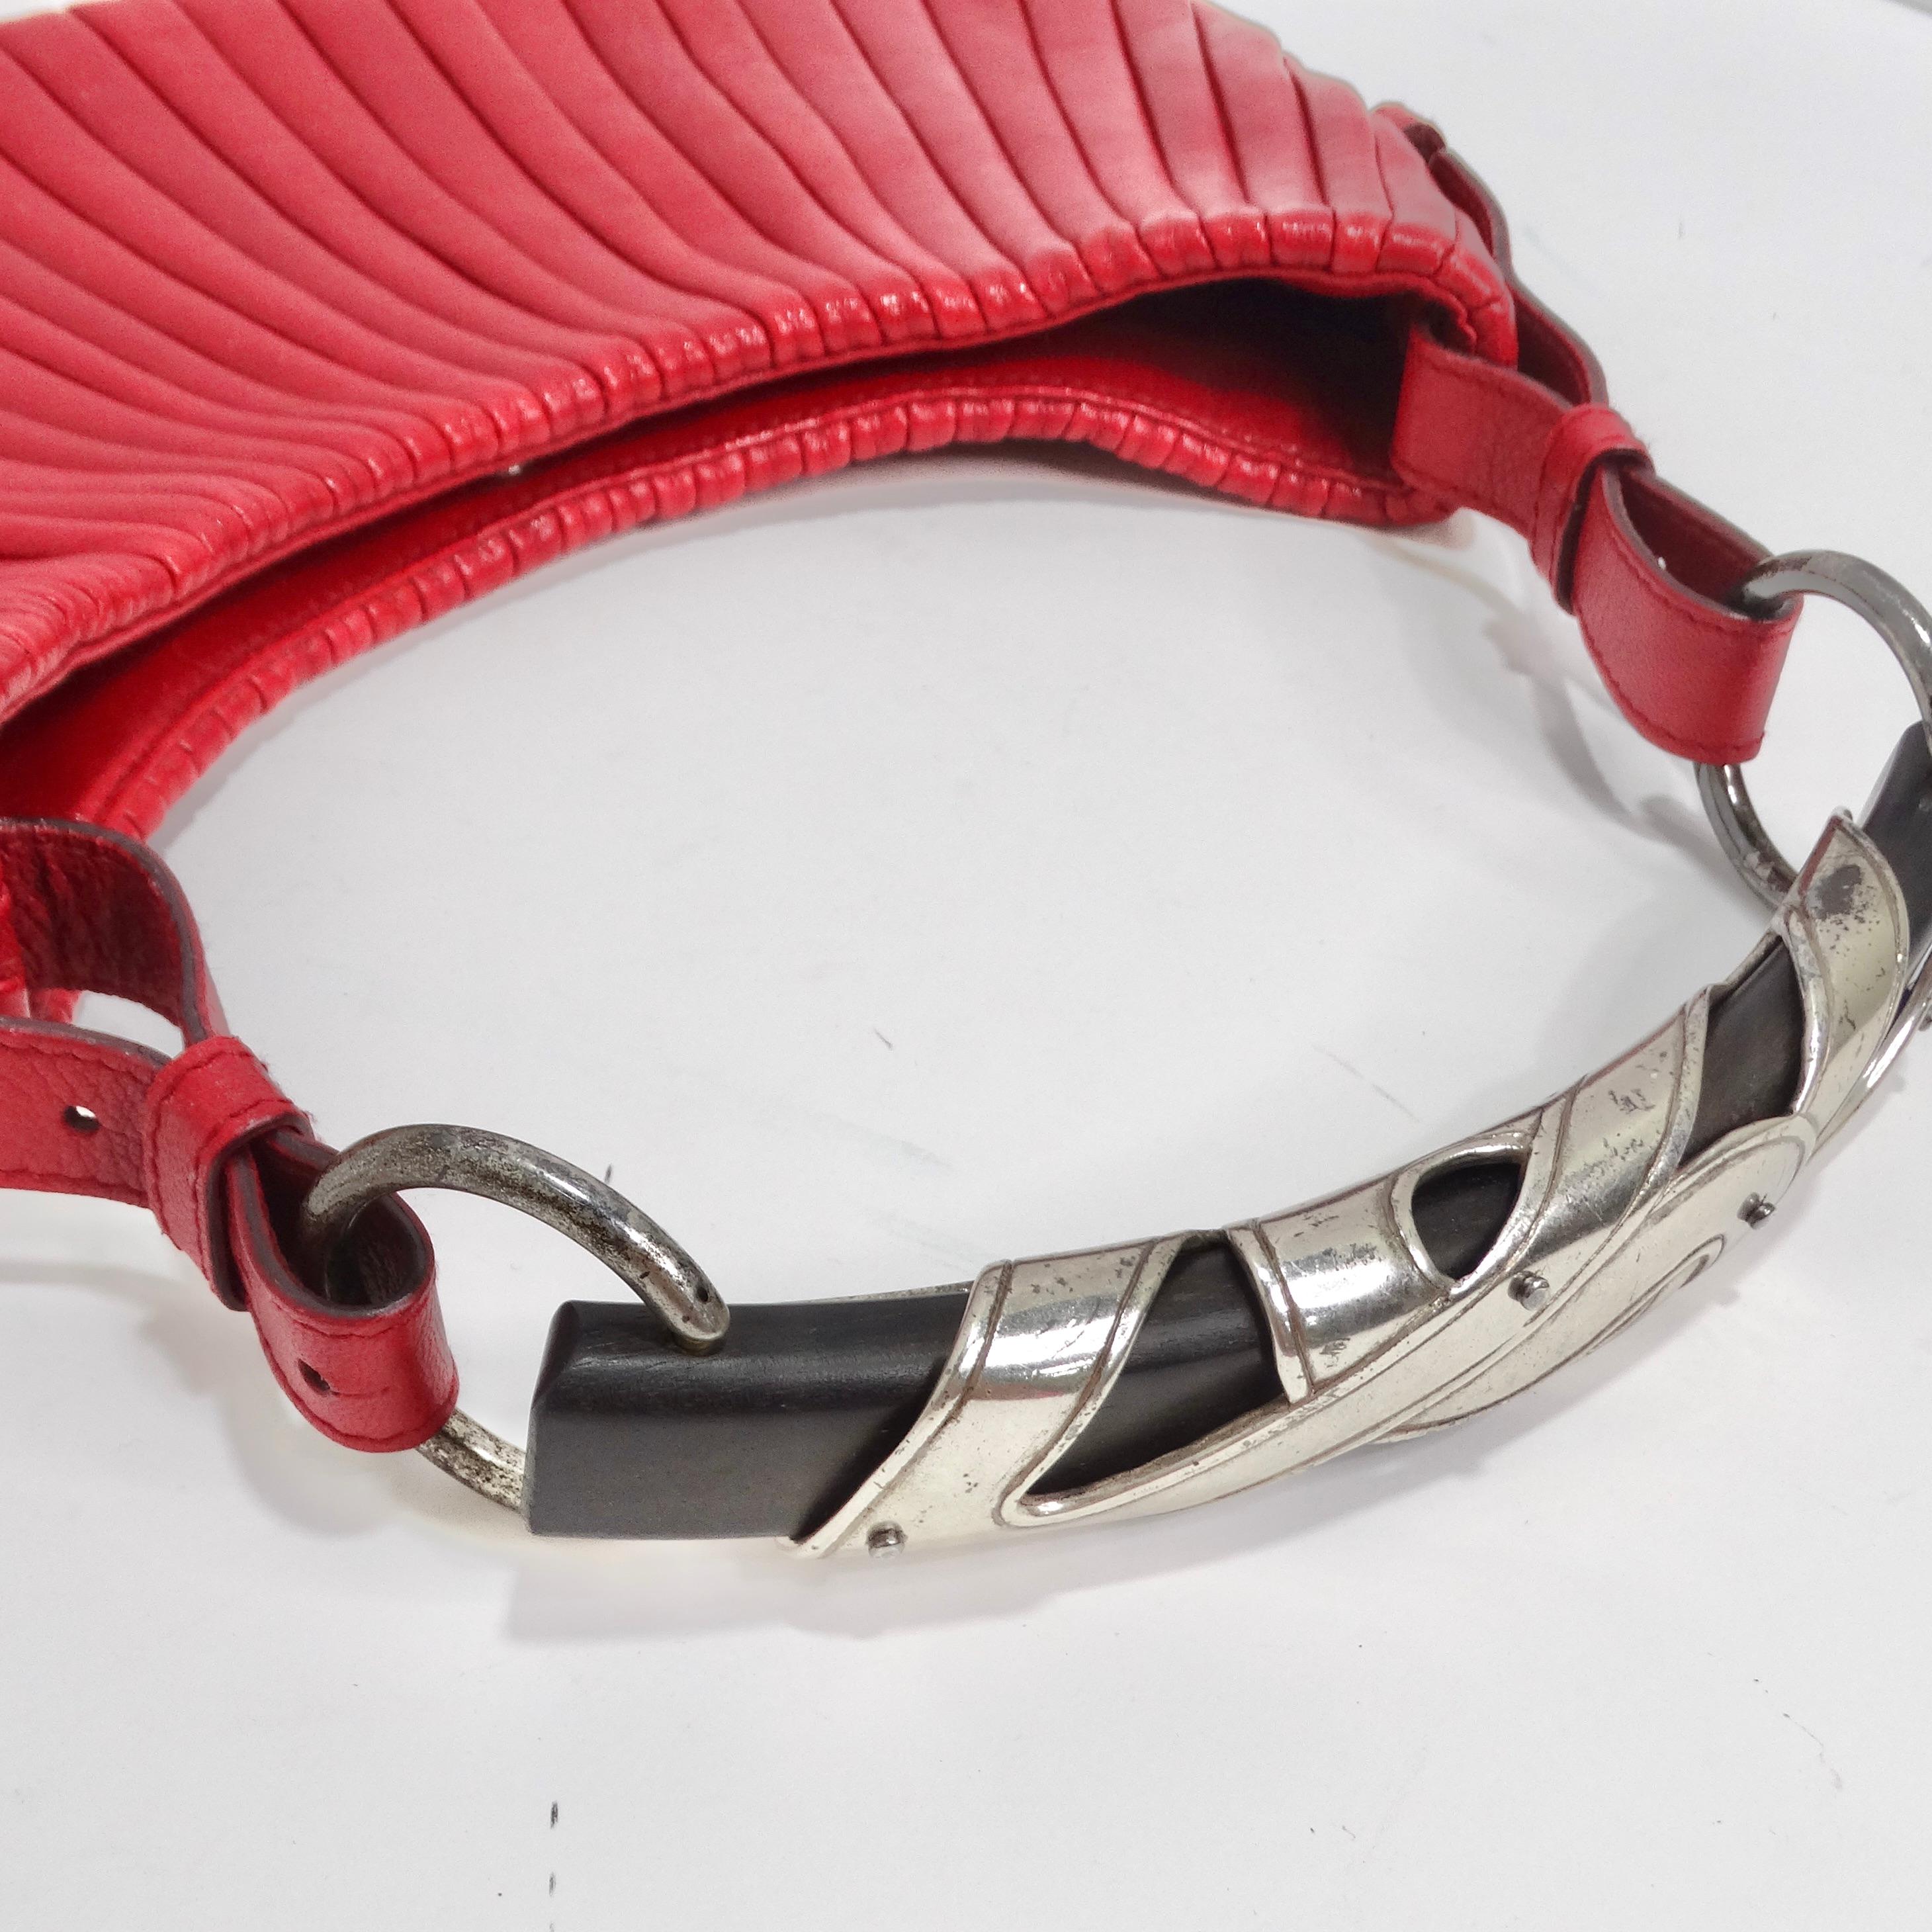 Tom Ford For Yves Saint Laurent Mombasa Red Leather Handbag 2